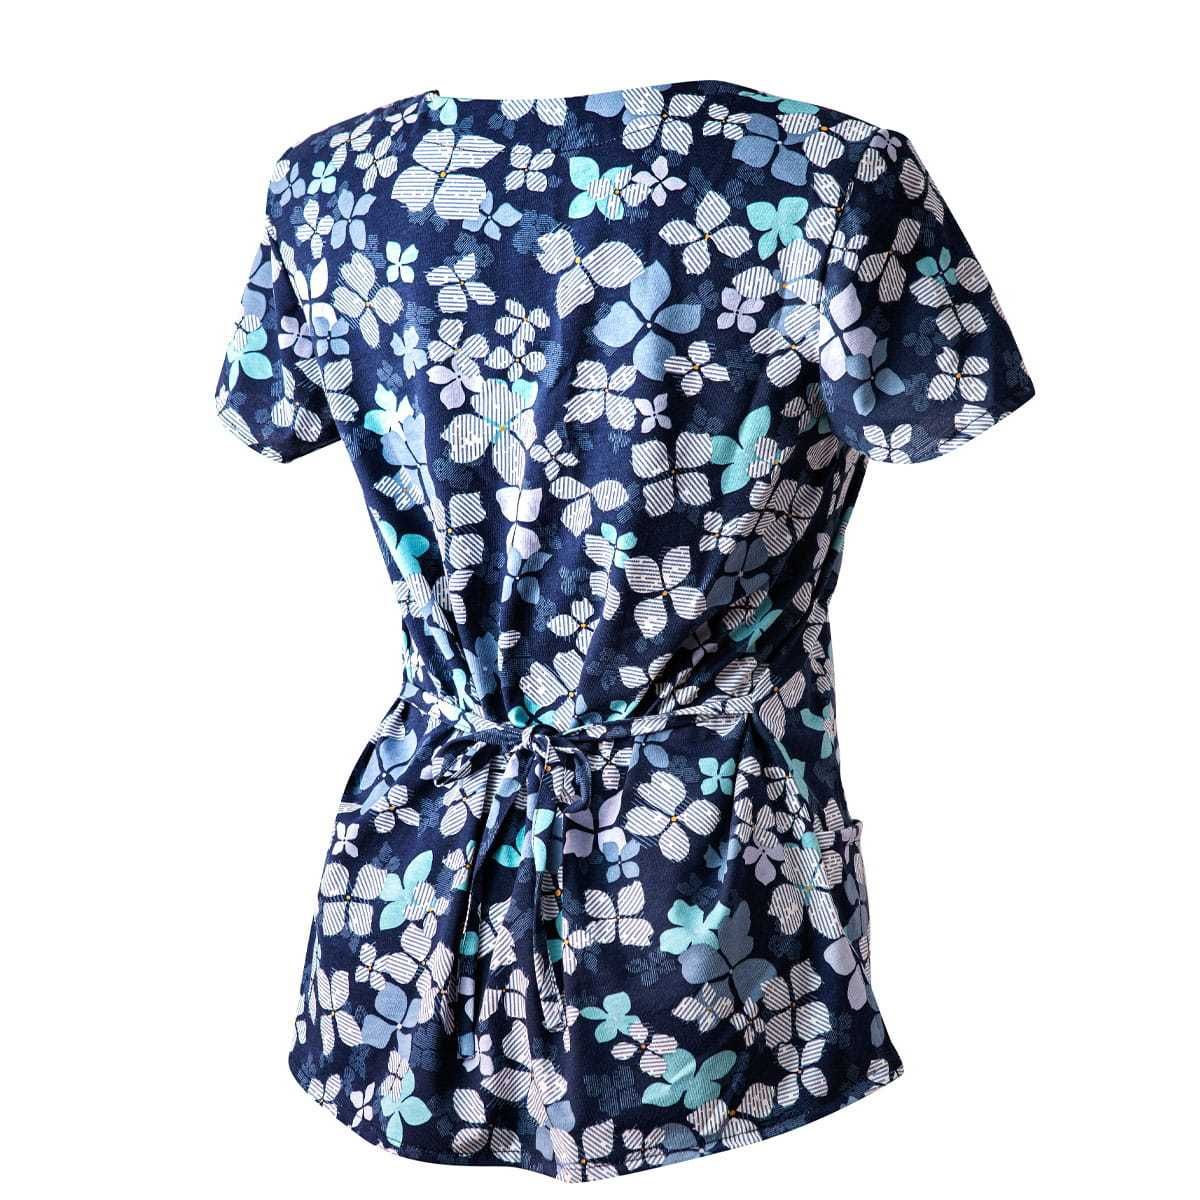 Bluza Medyczna Granatowa Koszulka Bawełniana Kwiaty niebieskie roz 46